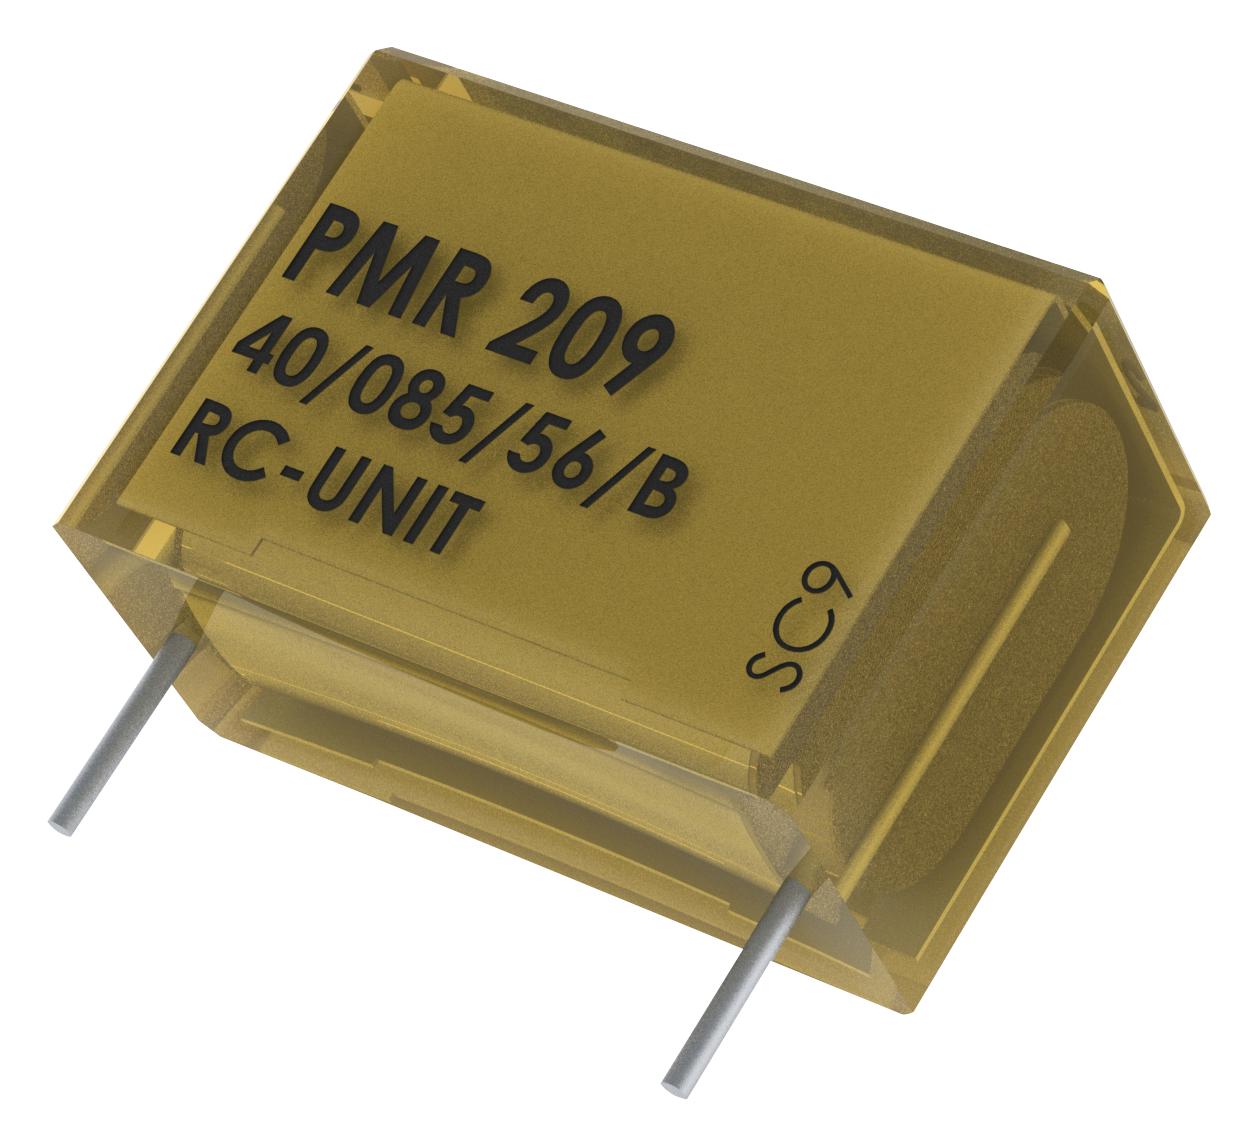 PMR209MC6100M100R30 CAP, 0.1µF, 20%, PAPER, RADIAL KEMET